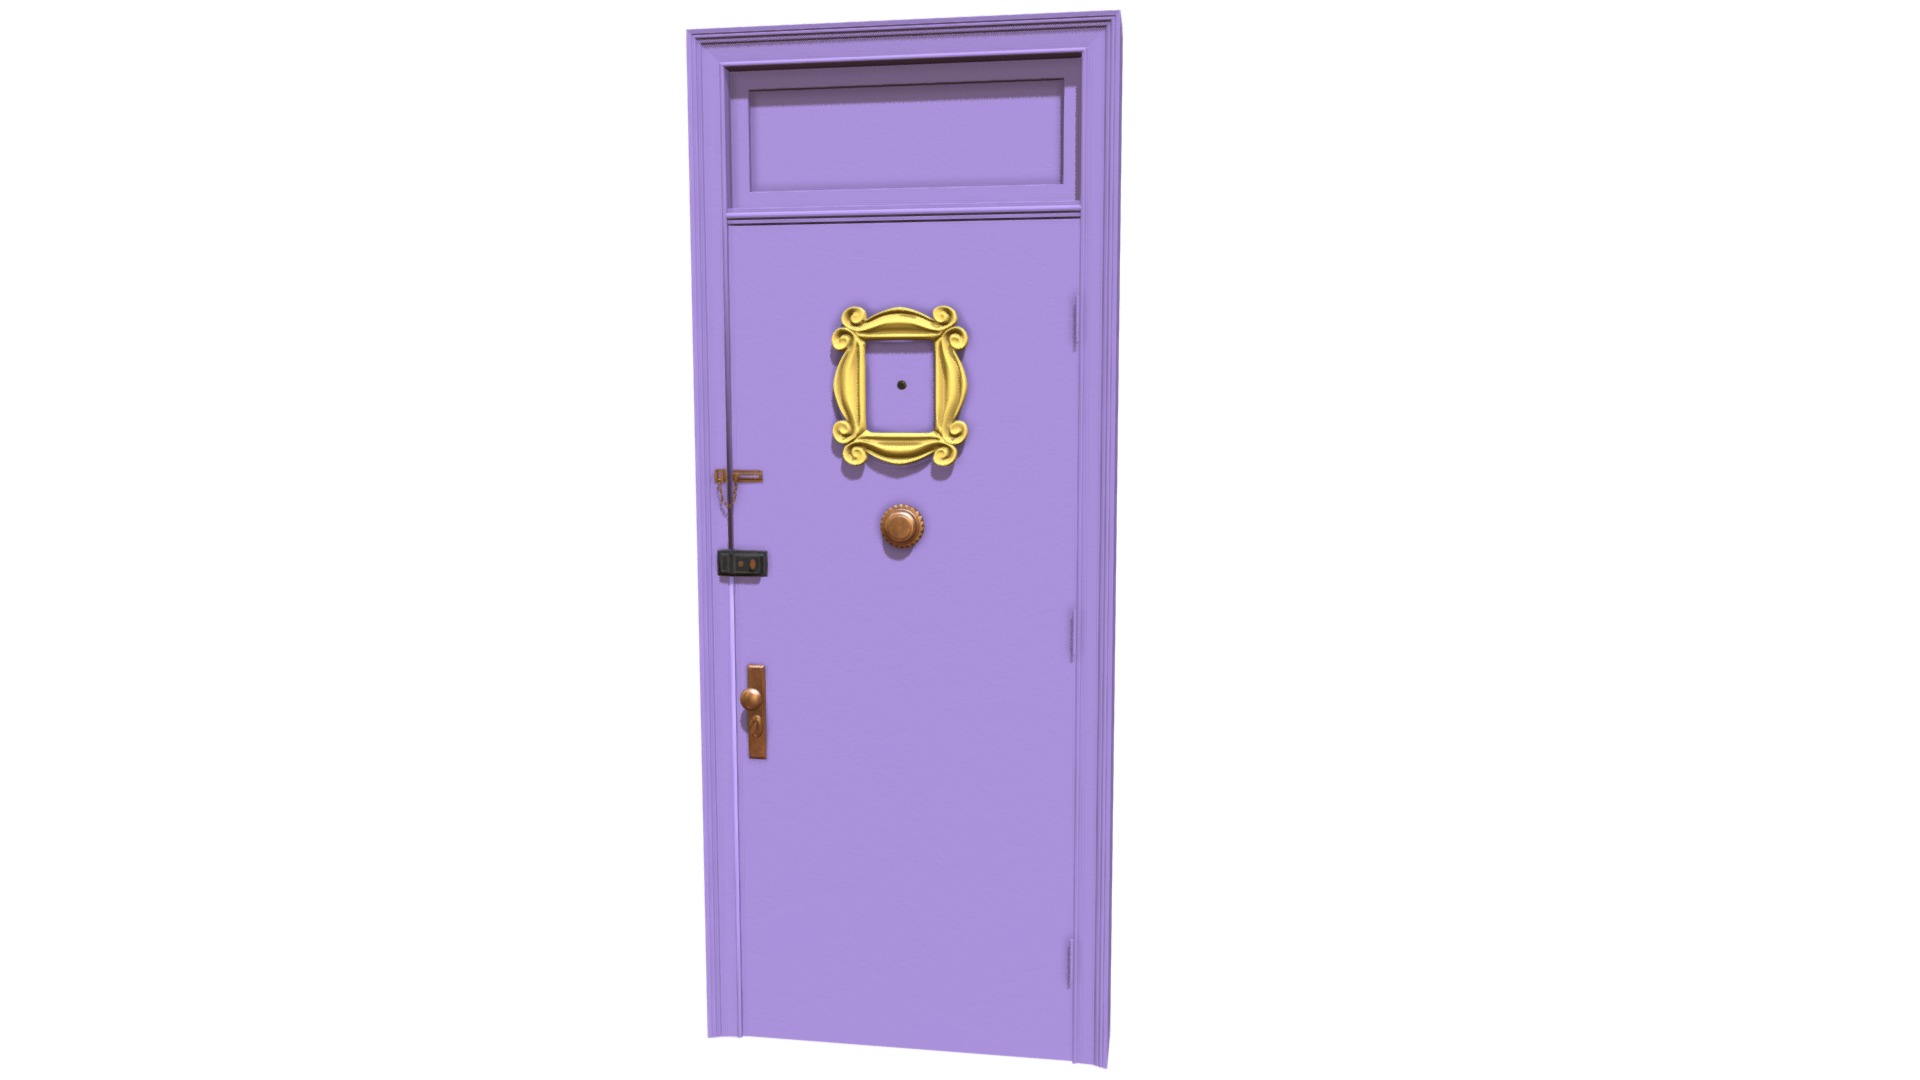 3D model Friends Door - This is a 3D model of the Friends Door. The 3D model is about a purple door with a gold emblem.